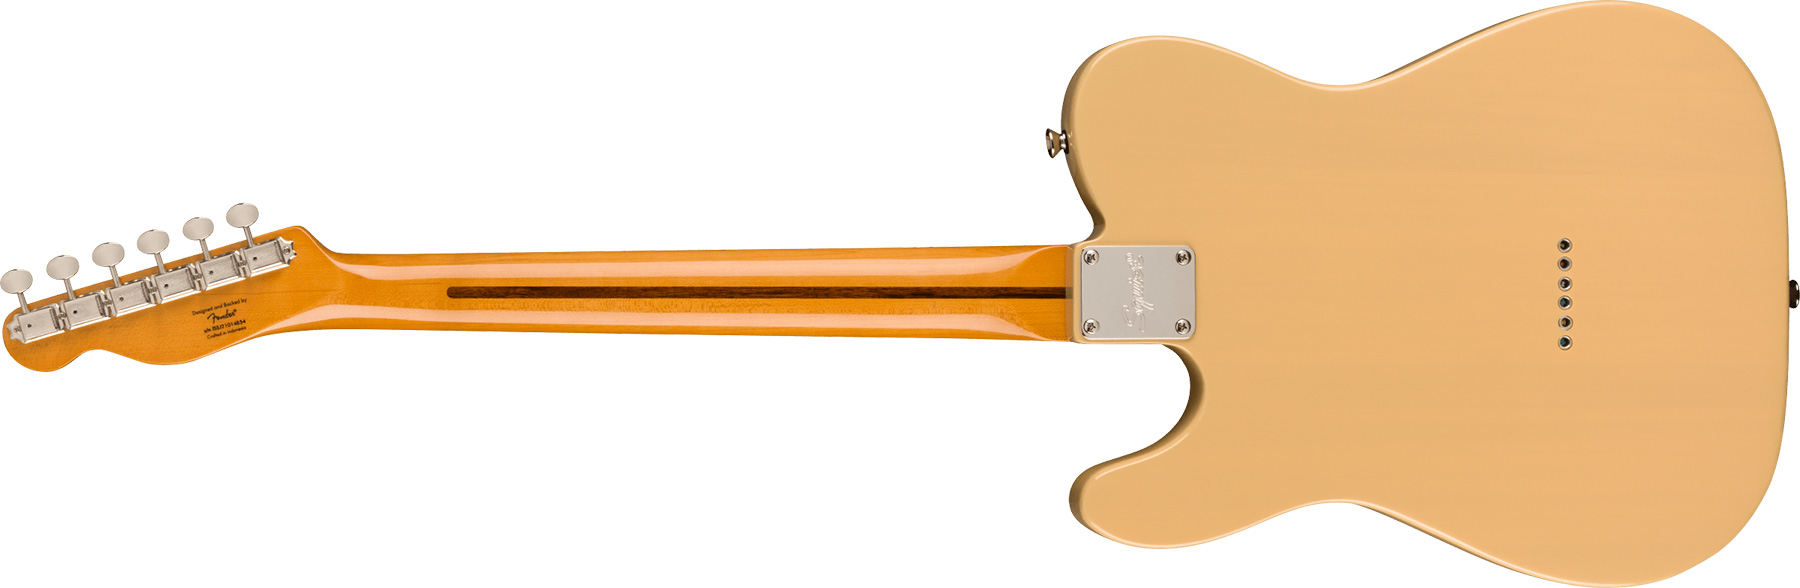 Squier Tele '50s Parchment Pickguard Classic Vibe Fsr 2s Ht Mn - Vintage Blonde - Guitarra eléctrica con forma de tel - Variation 1